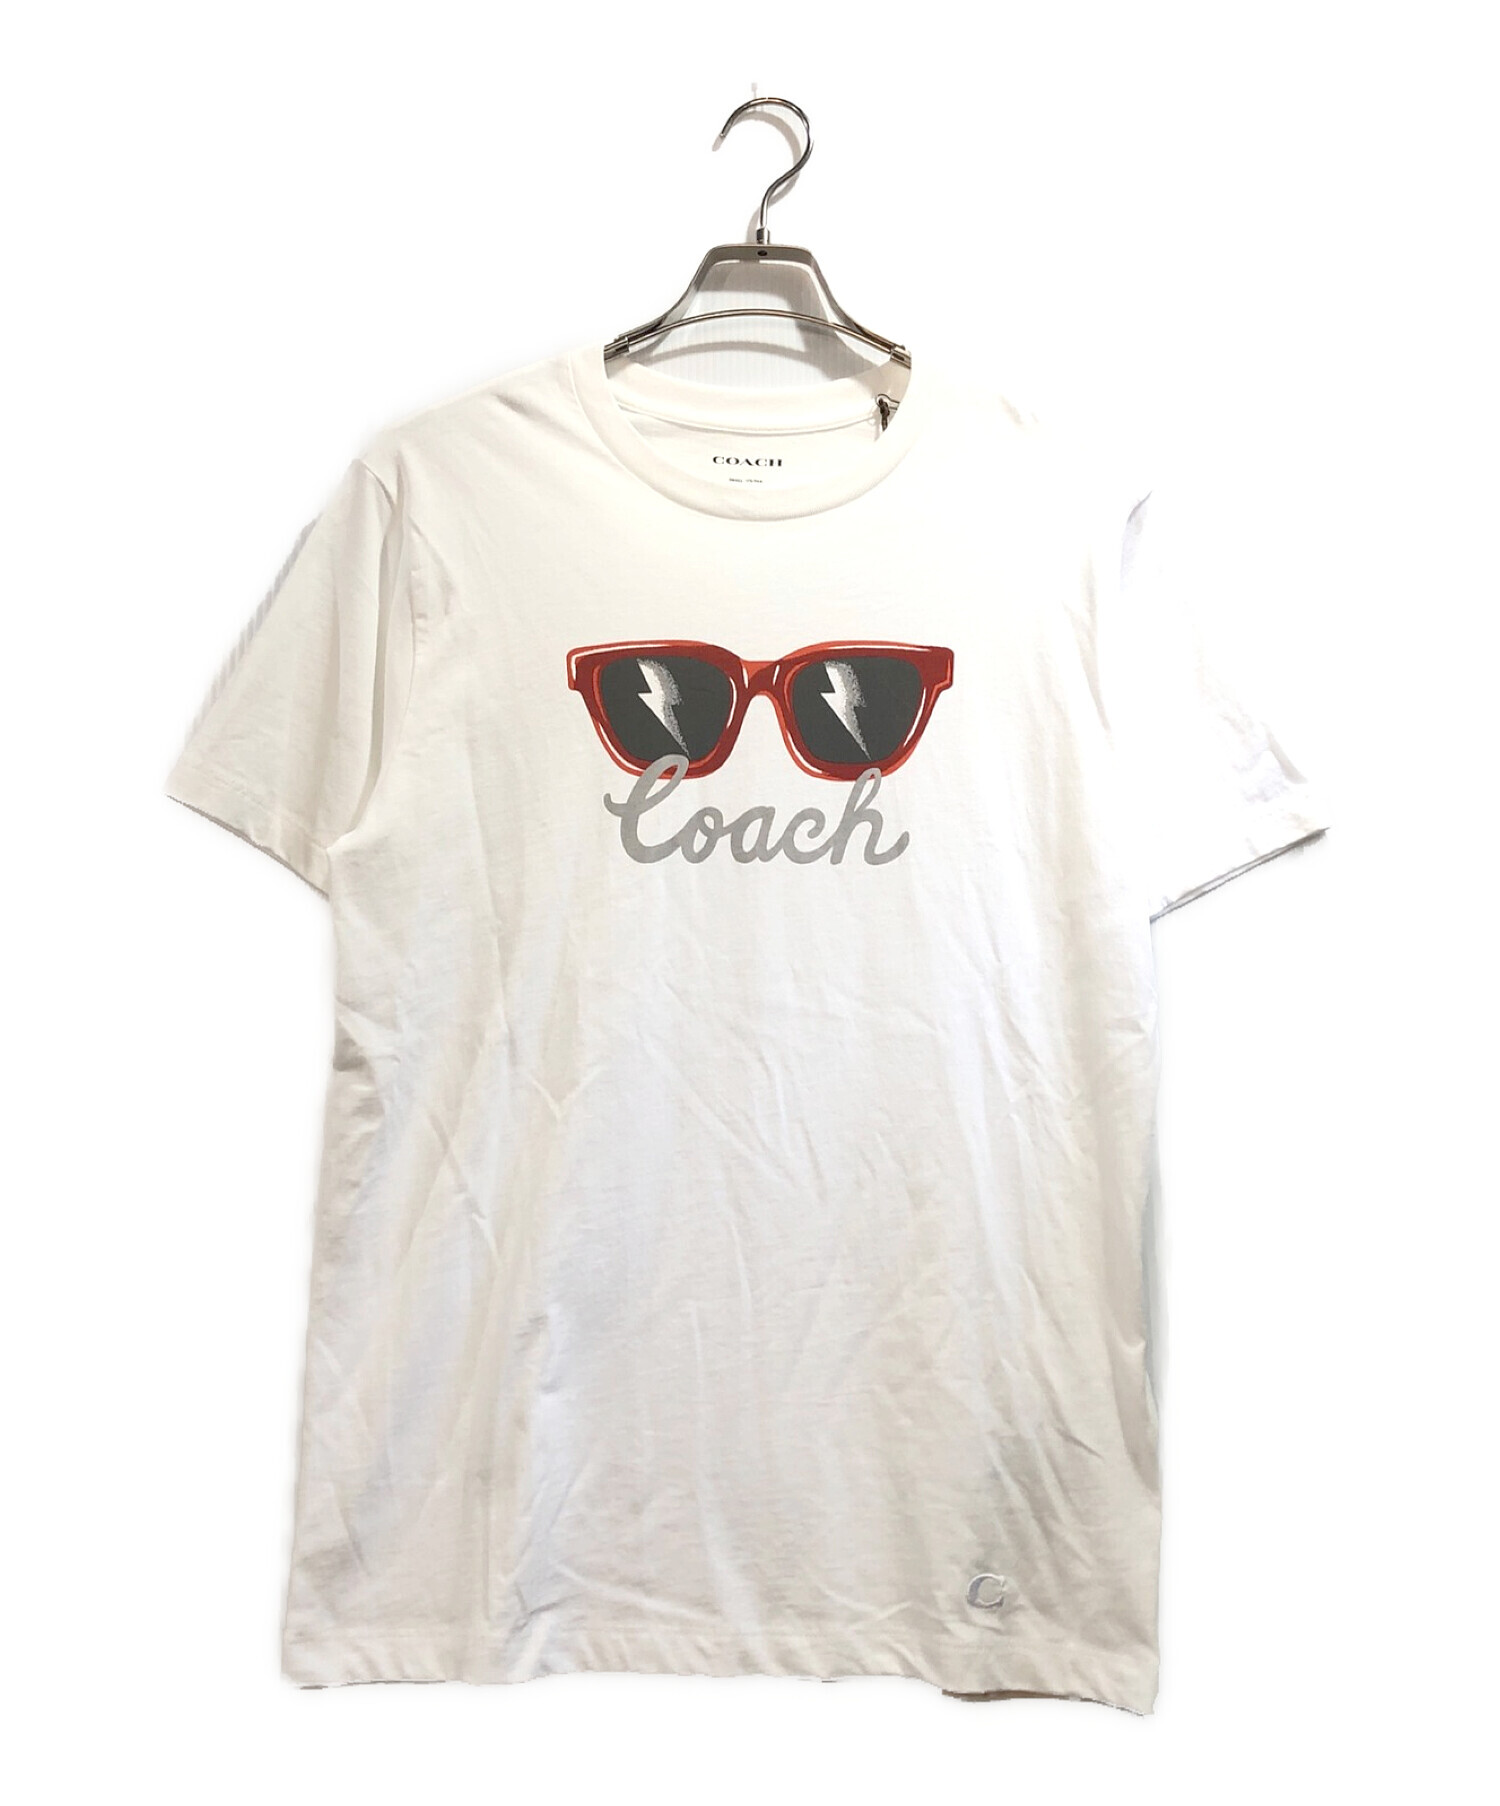 ☆COACH コーチ ブランド ロゴ デザイン Tシャツ 半袖/メンズ/S64cm身幅